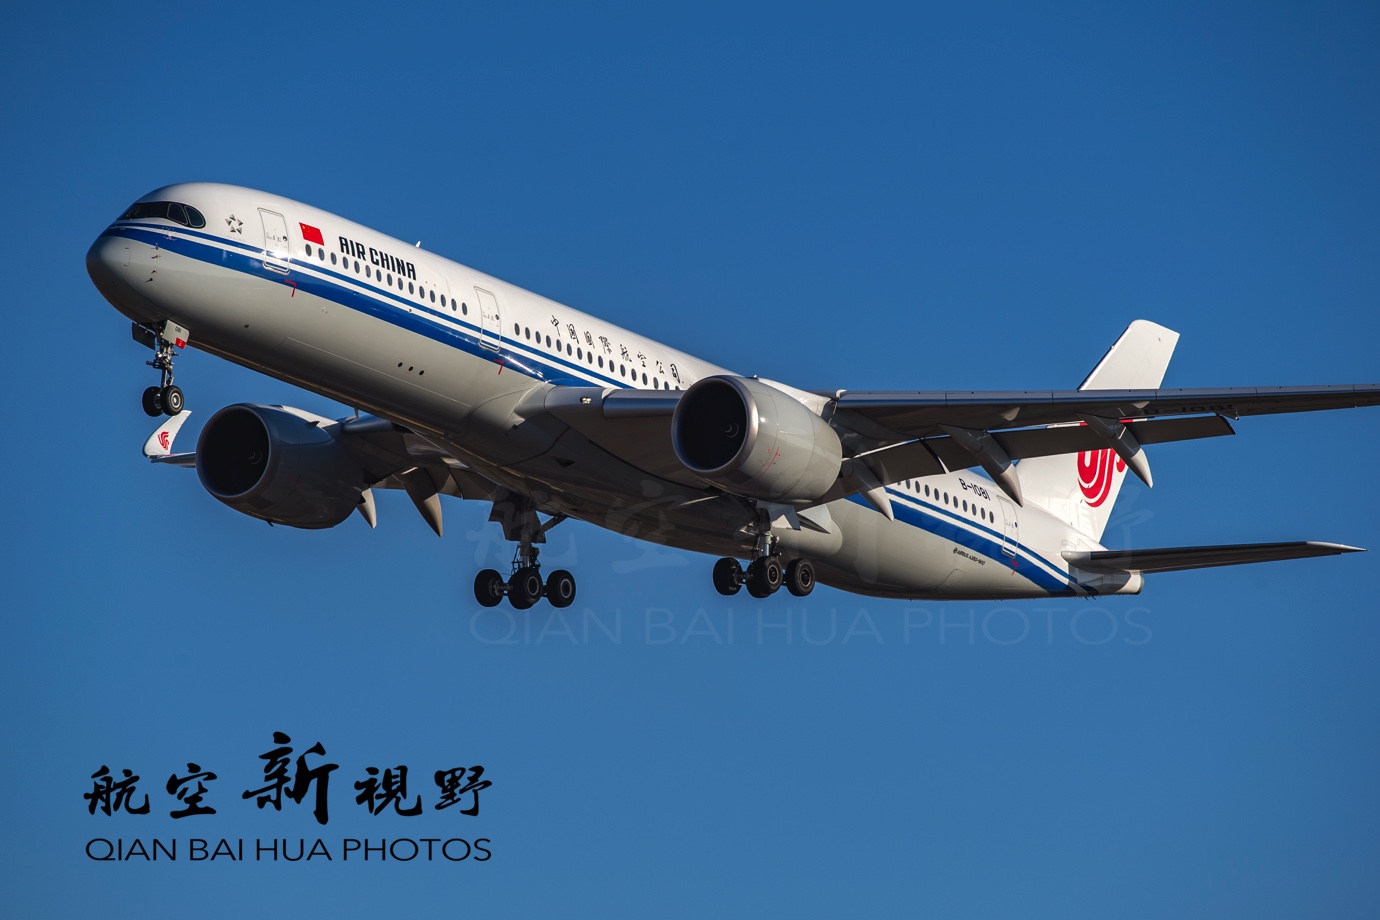 图片为中国国际航空公司的空中客车a350 xwb飞机,网友喜欢称之为